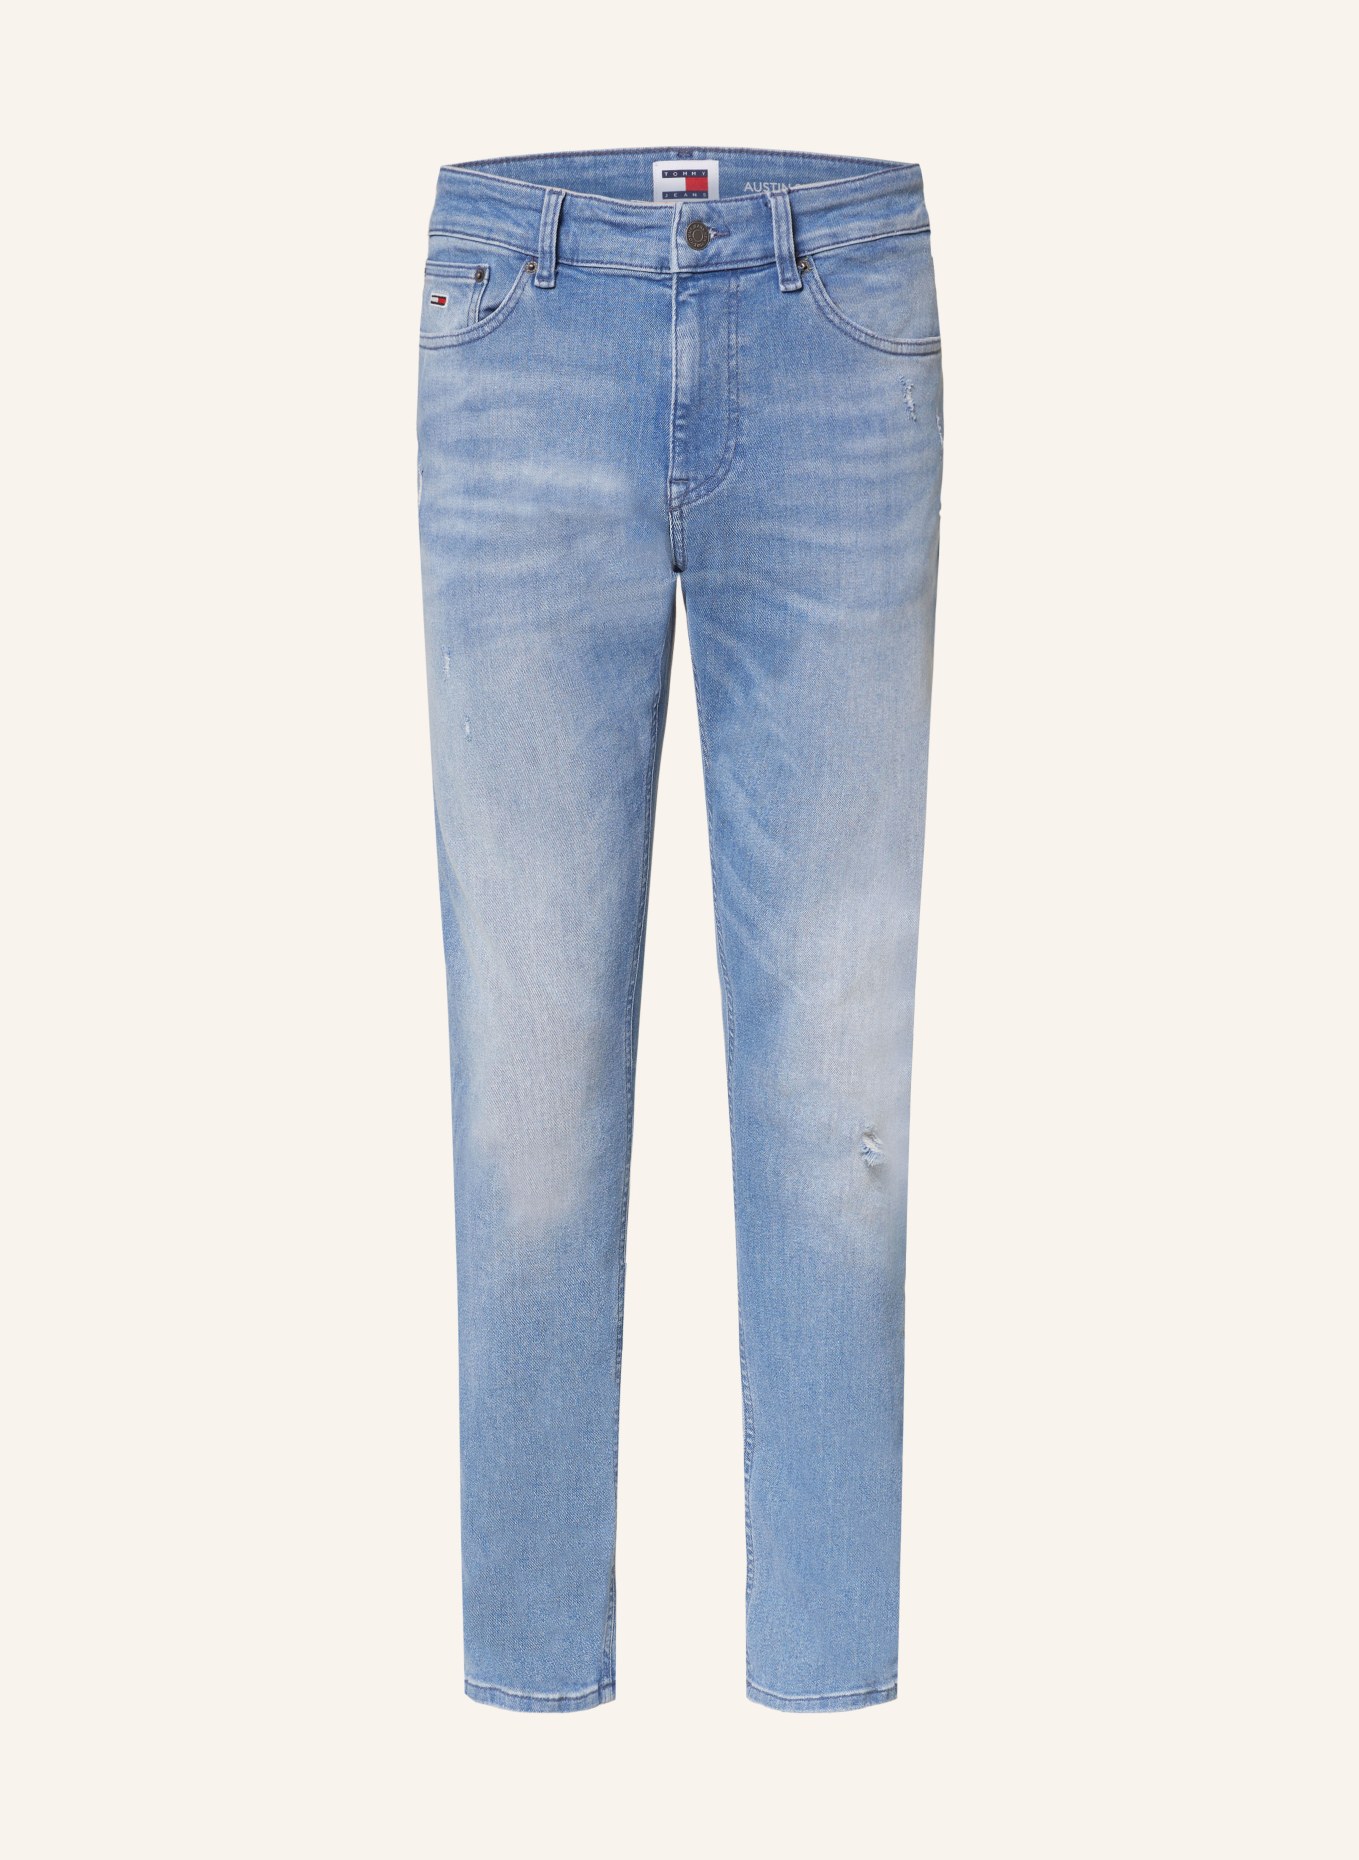 TOMMY JEANS Jeans AUSTIN Slim Tapered Fit, Farbe: 1A5 Denim Medium (Bild 1)